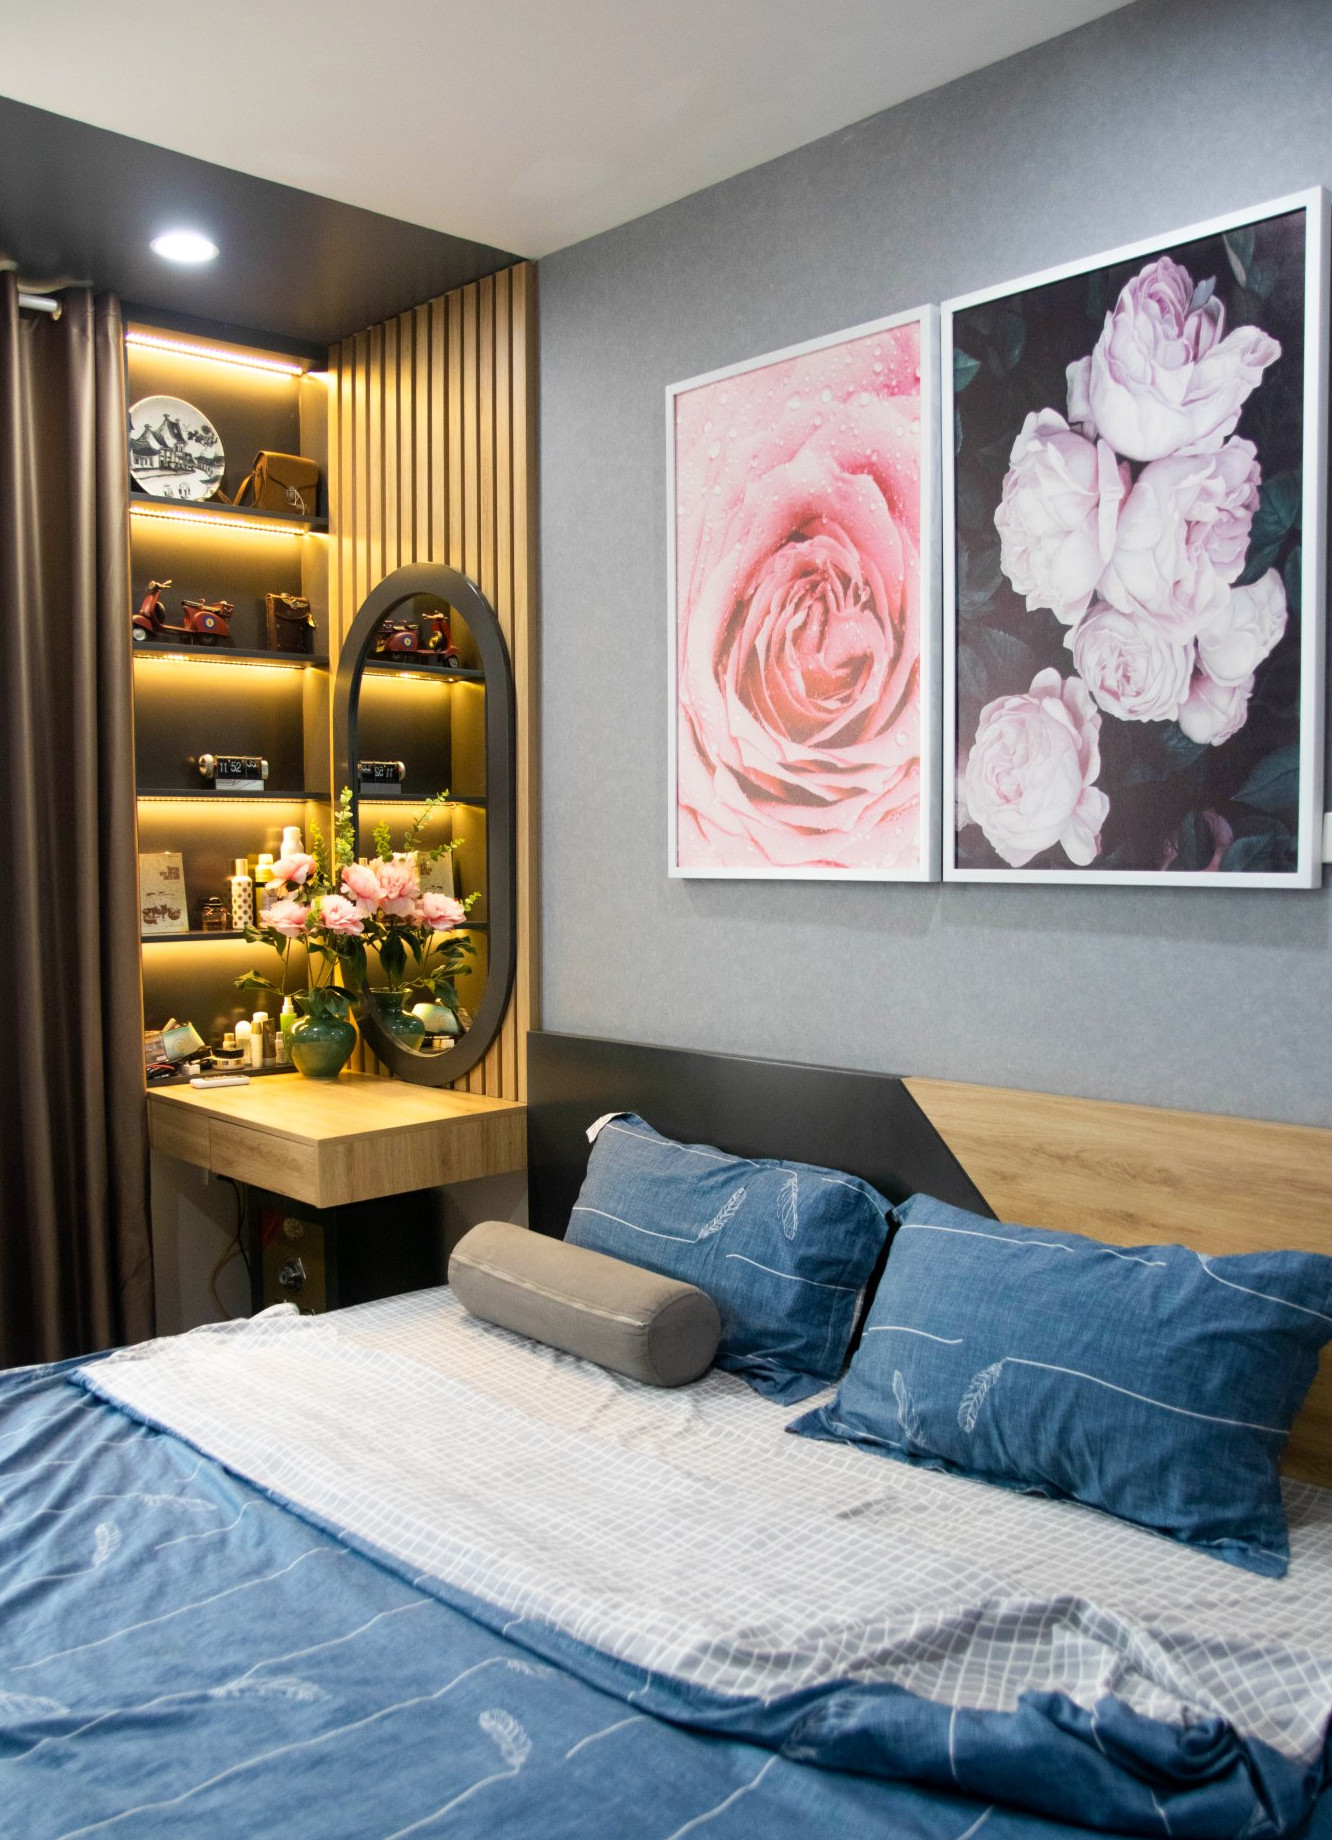 hình ảnh góc phòng ngủ với bàn trang điểm ấn tượng, tranh hoa hồng tươi tắn treo đầu giường